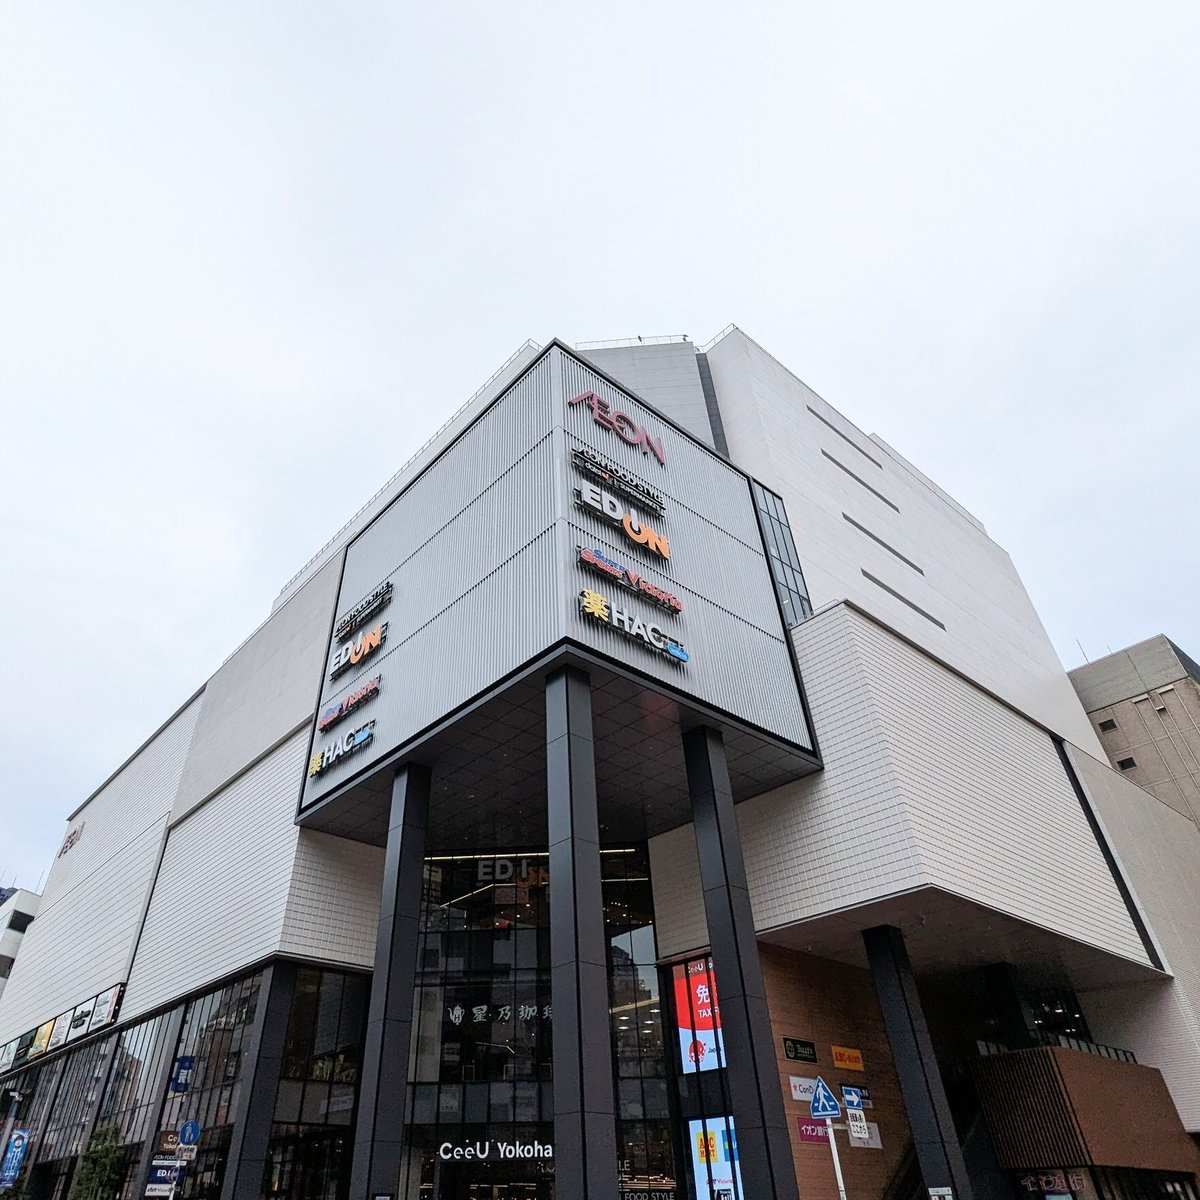 おはようございます！ 横浜市内はくもり、最高気温は24℃ 10:00～21:00で営業中です✨ 連休最終日ですね🥺 皆さんはどんなGWを過ごしましたか？😉 みなさまのご来店をお待ちしています！ #企業公式が毎朝地元の天気を言い合う